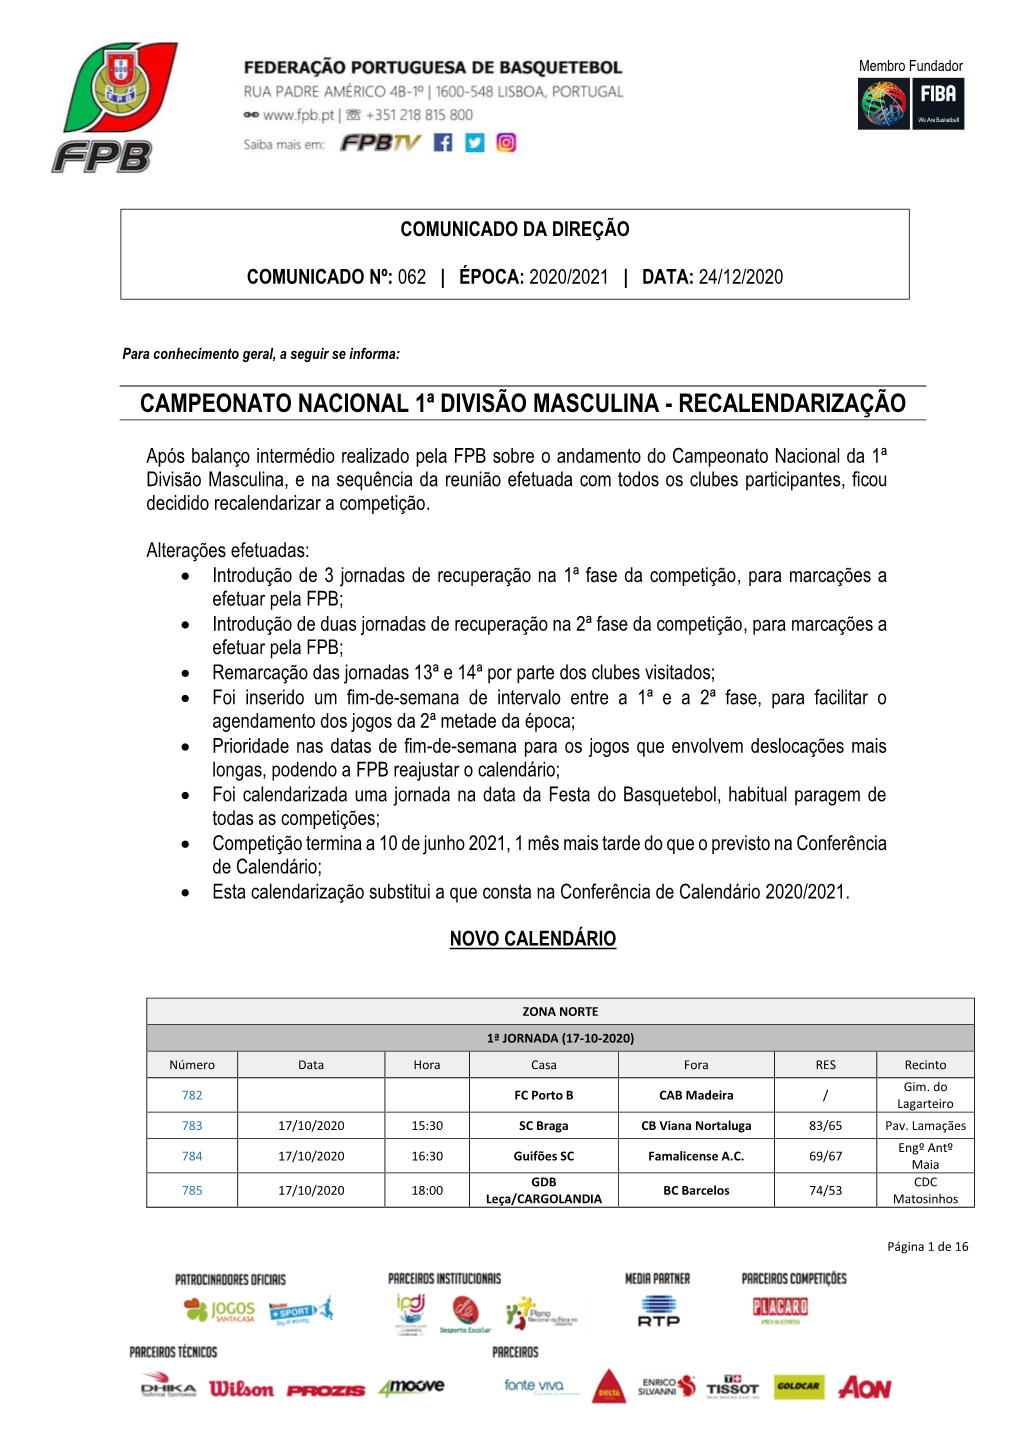 Campeonato Nacional 1ª Divisão Masculina - Recalendarização